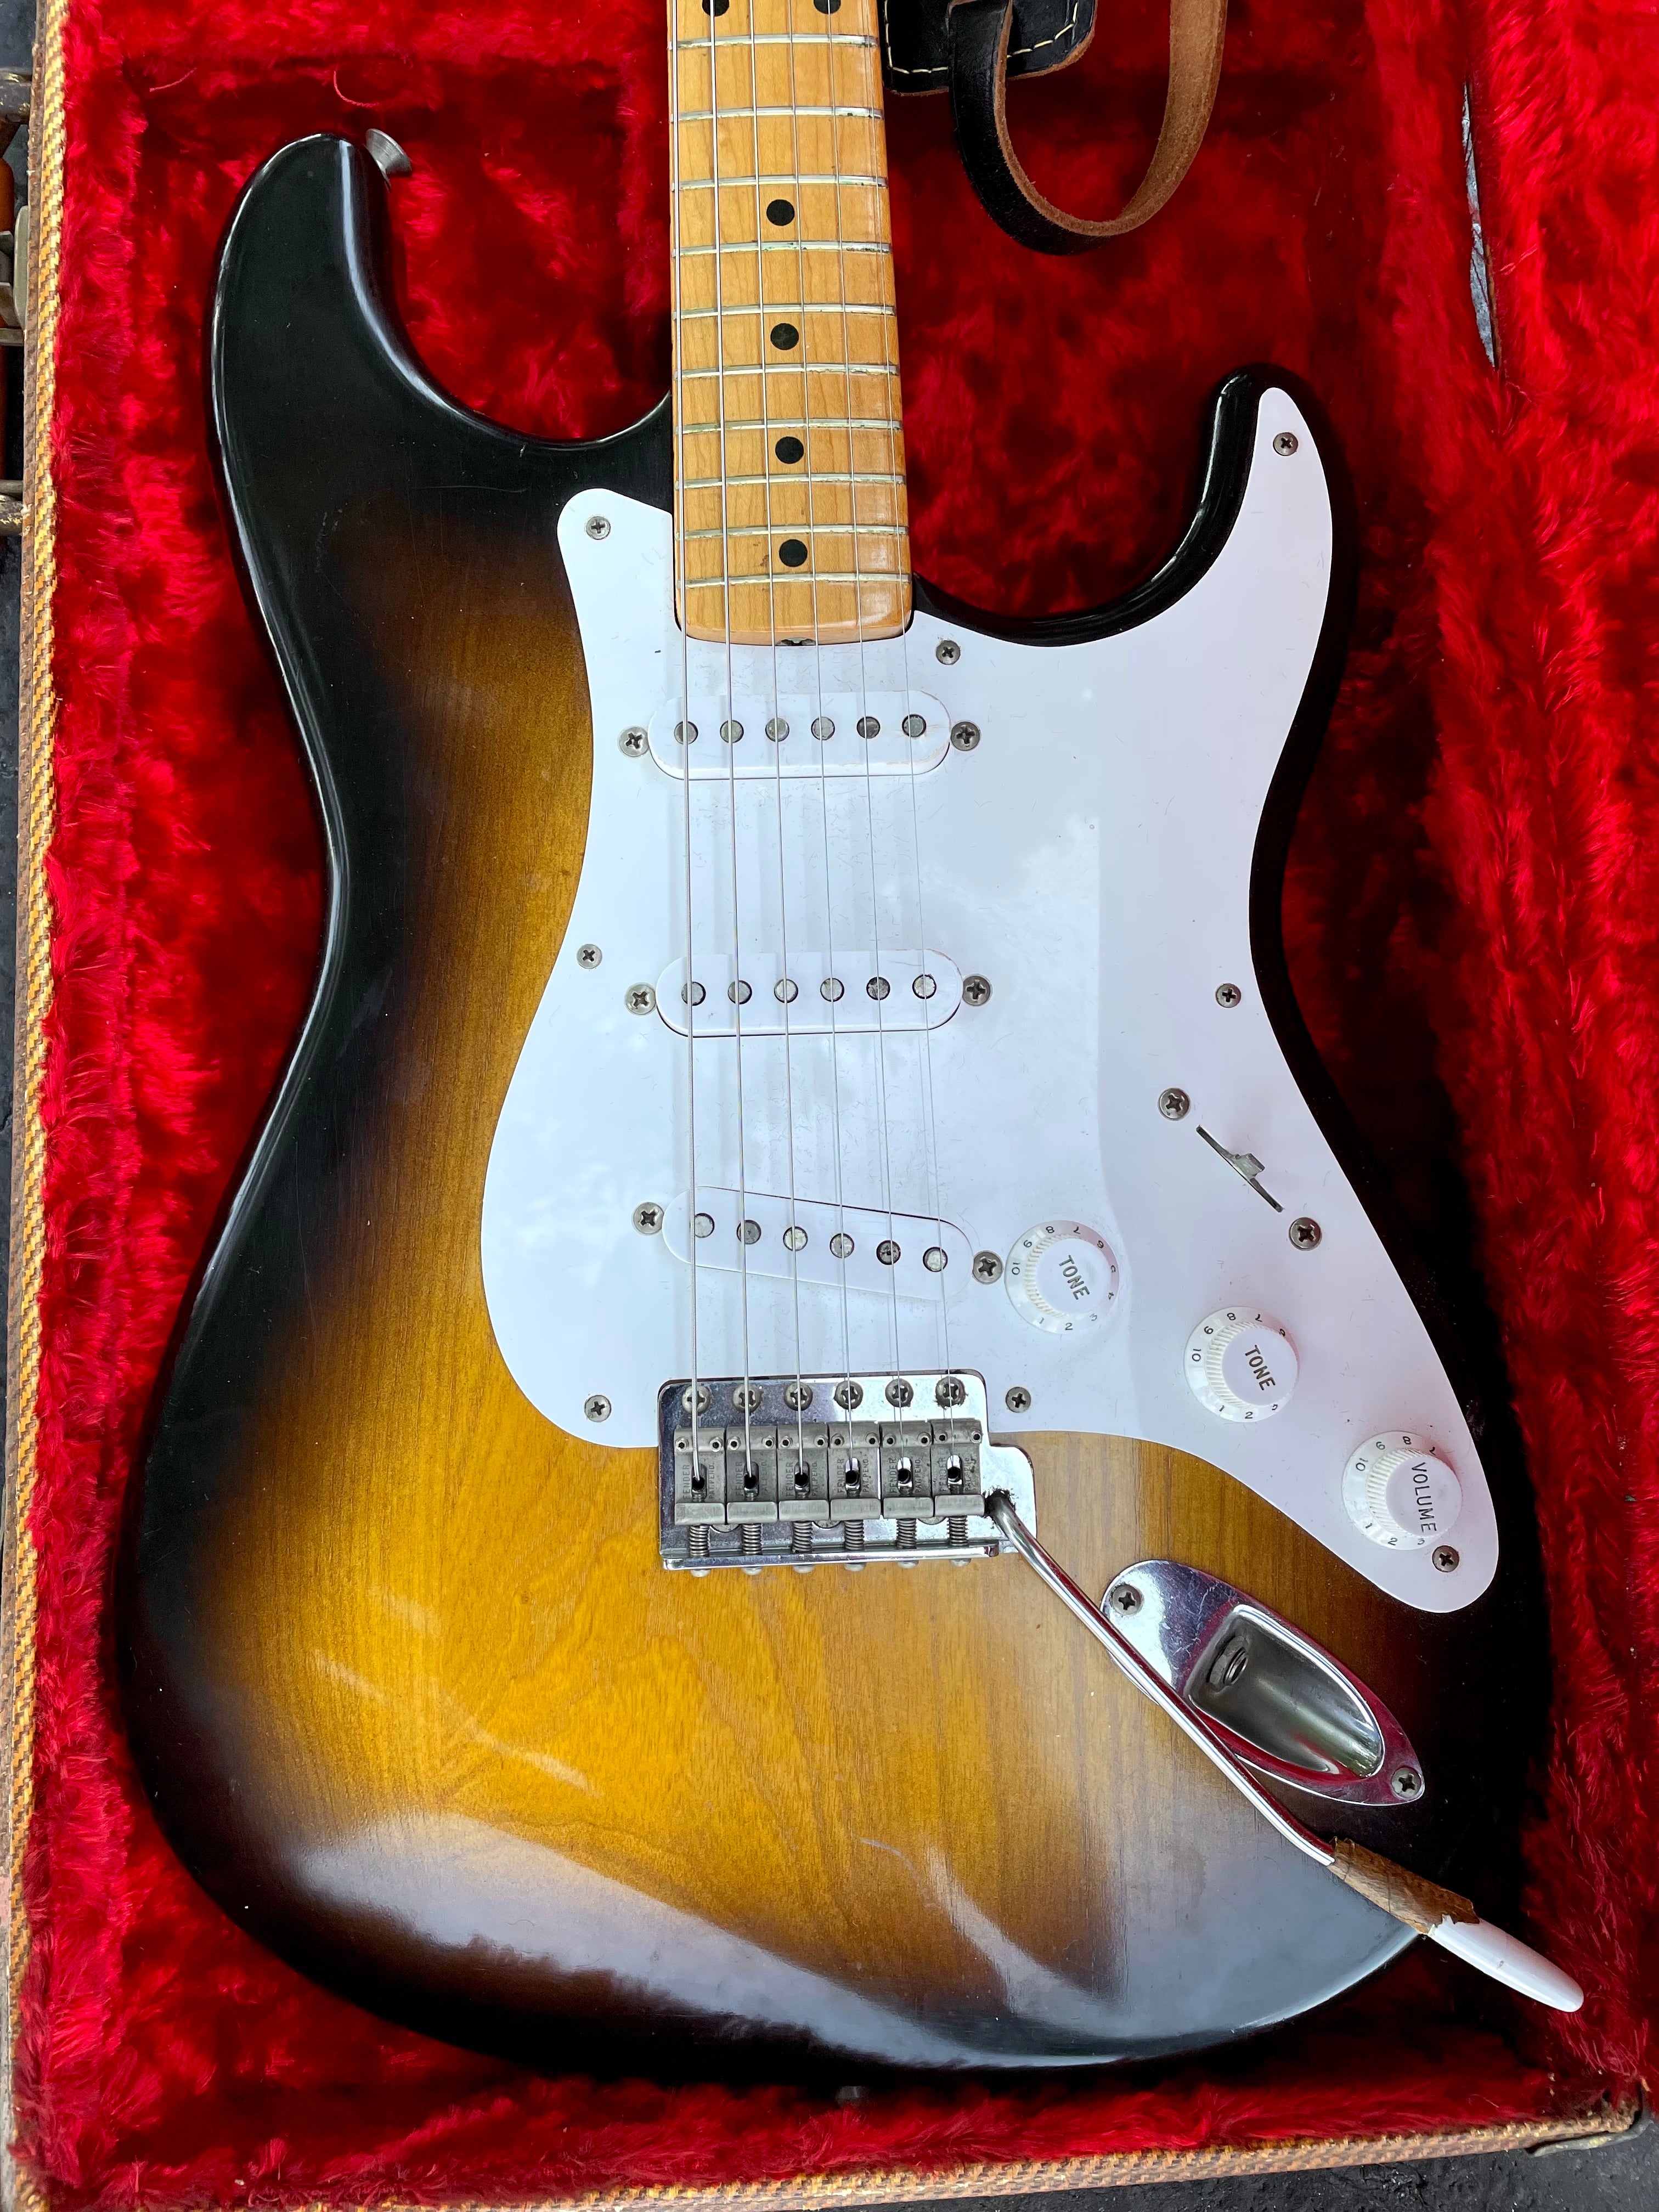 Vintage 1954 Fender Stratocaster guitar